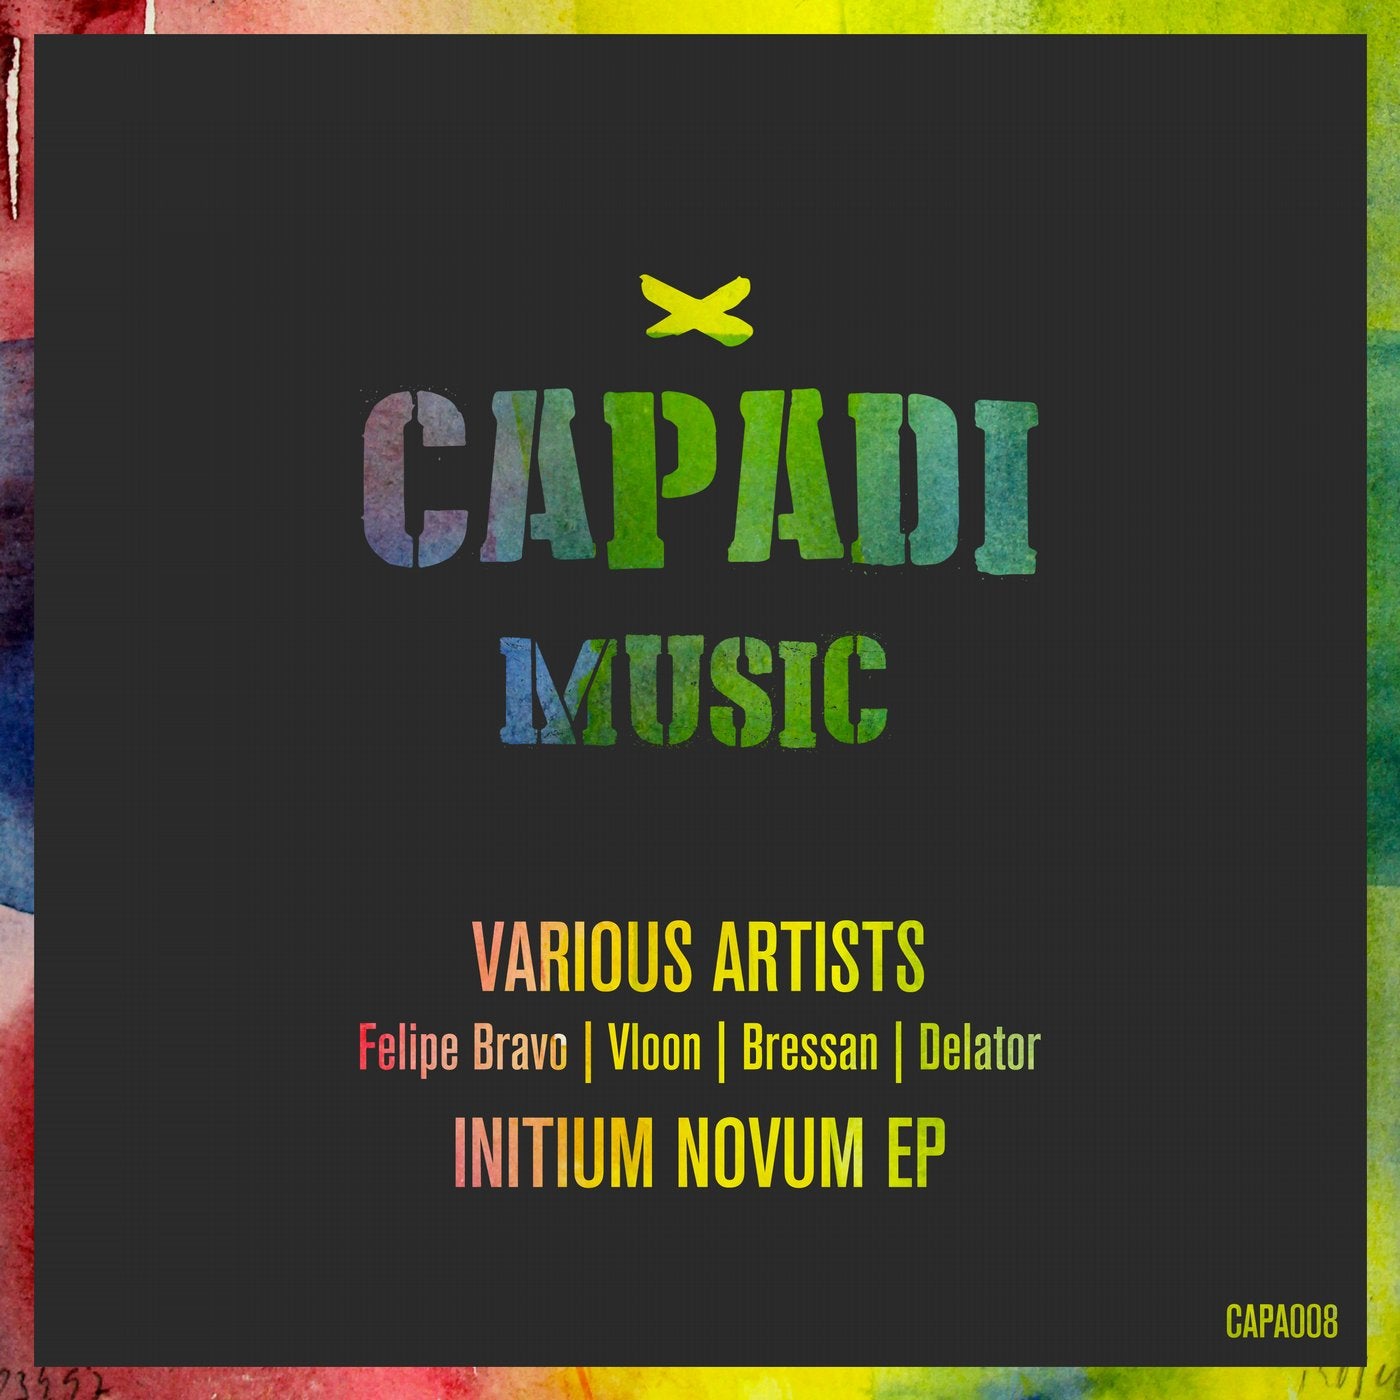 Initium Novum EP